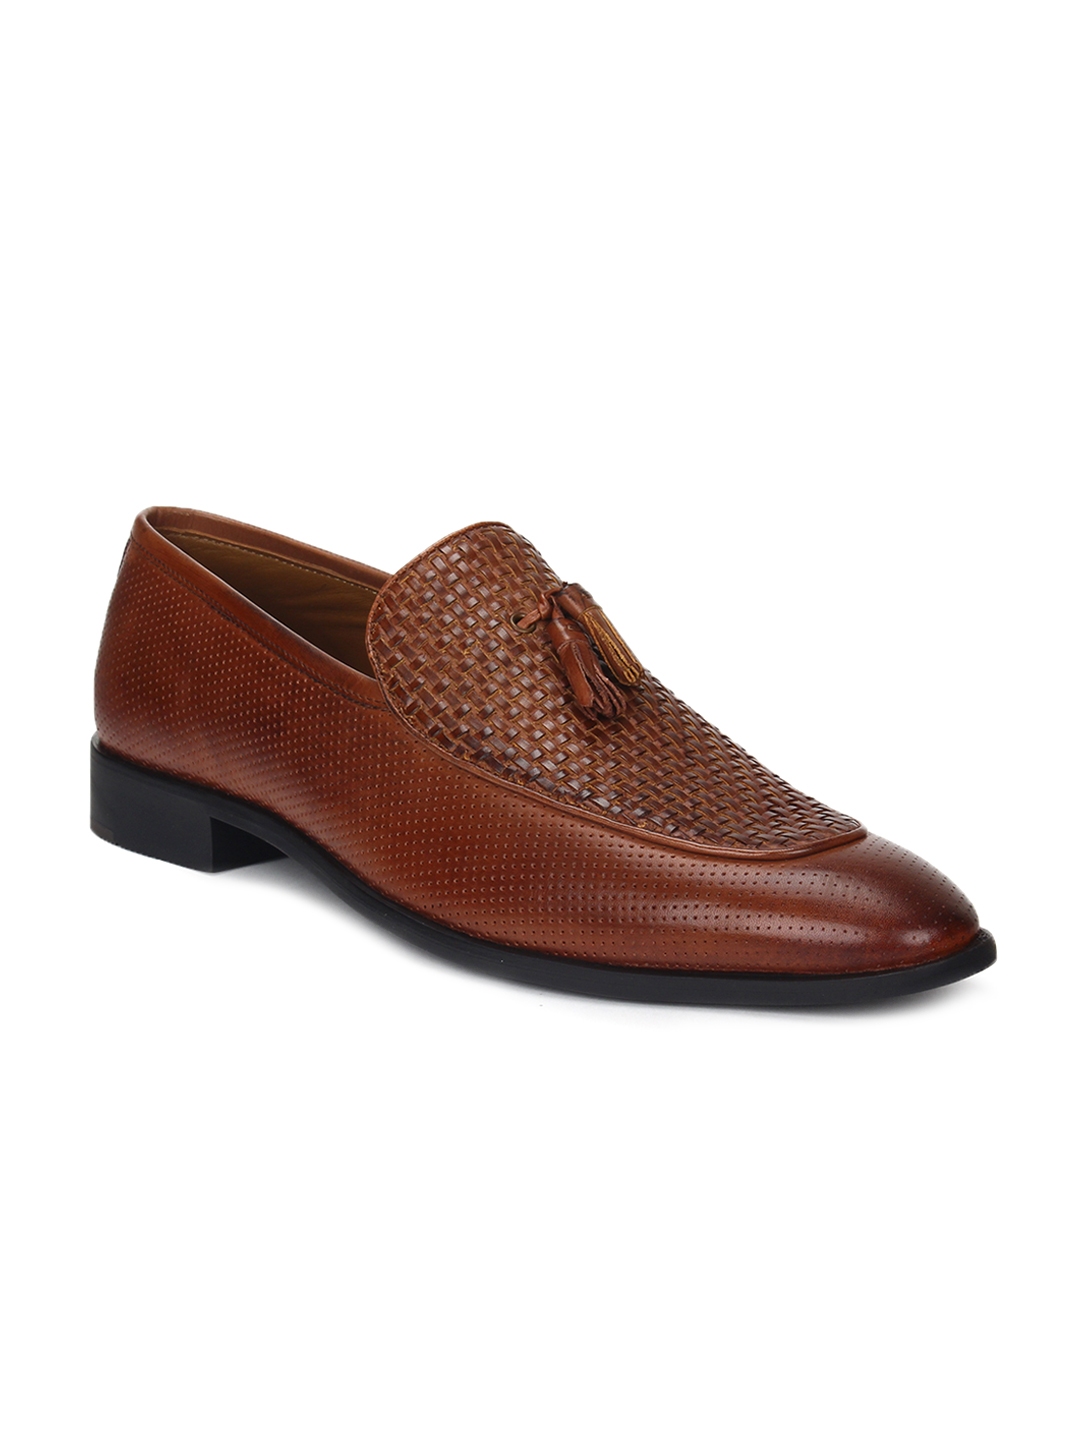 Shoes 6no original blackberry shoes - Men - 1746181095